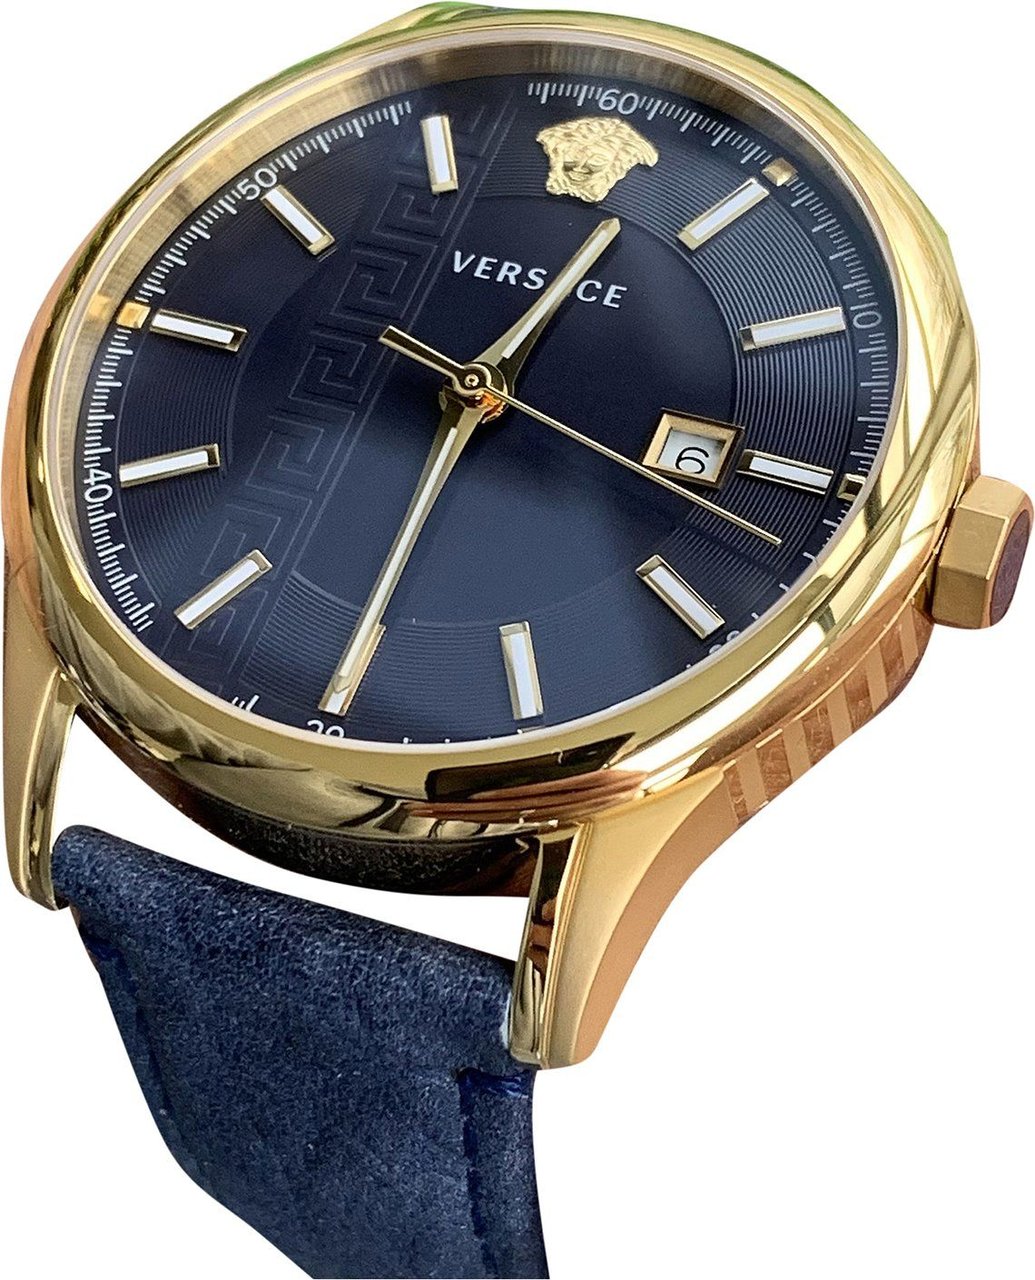 Versace VE4A00220 Aiakos heren horloge 44 mm Blauw